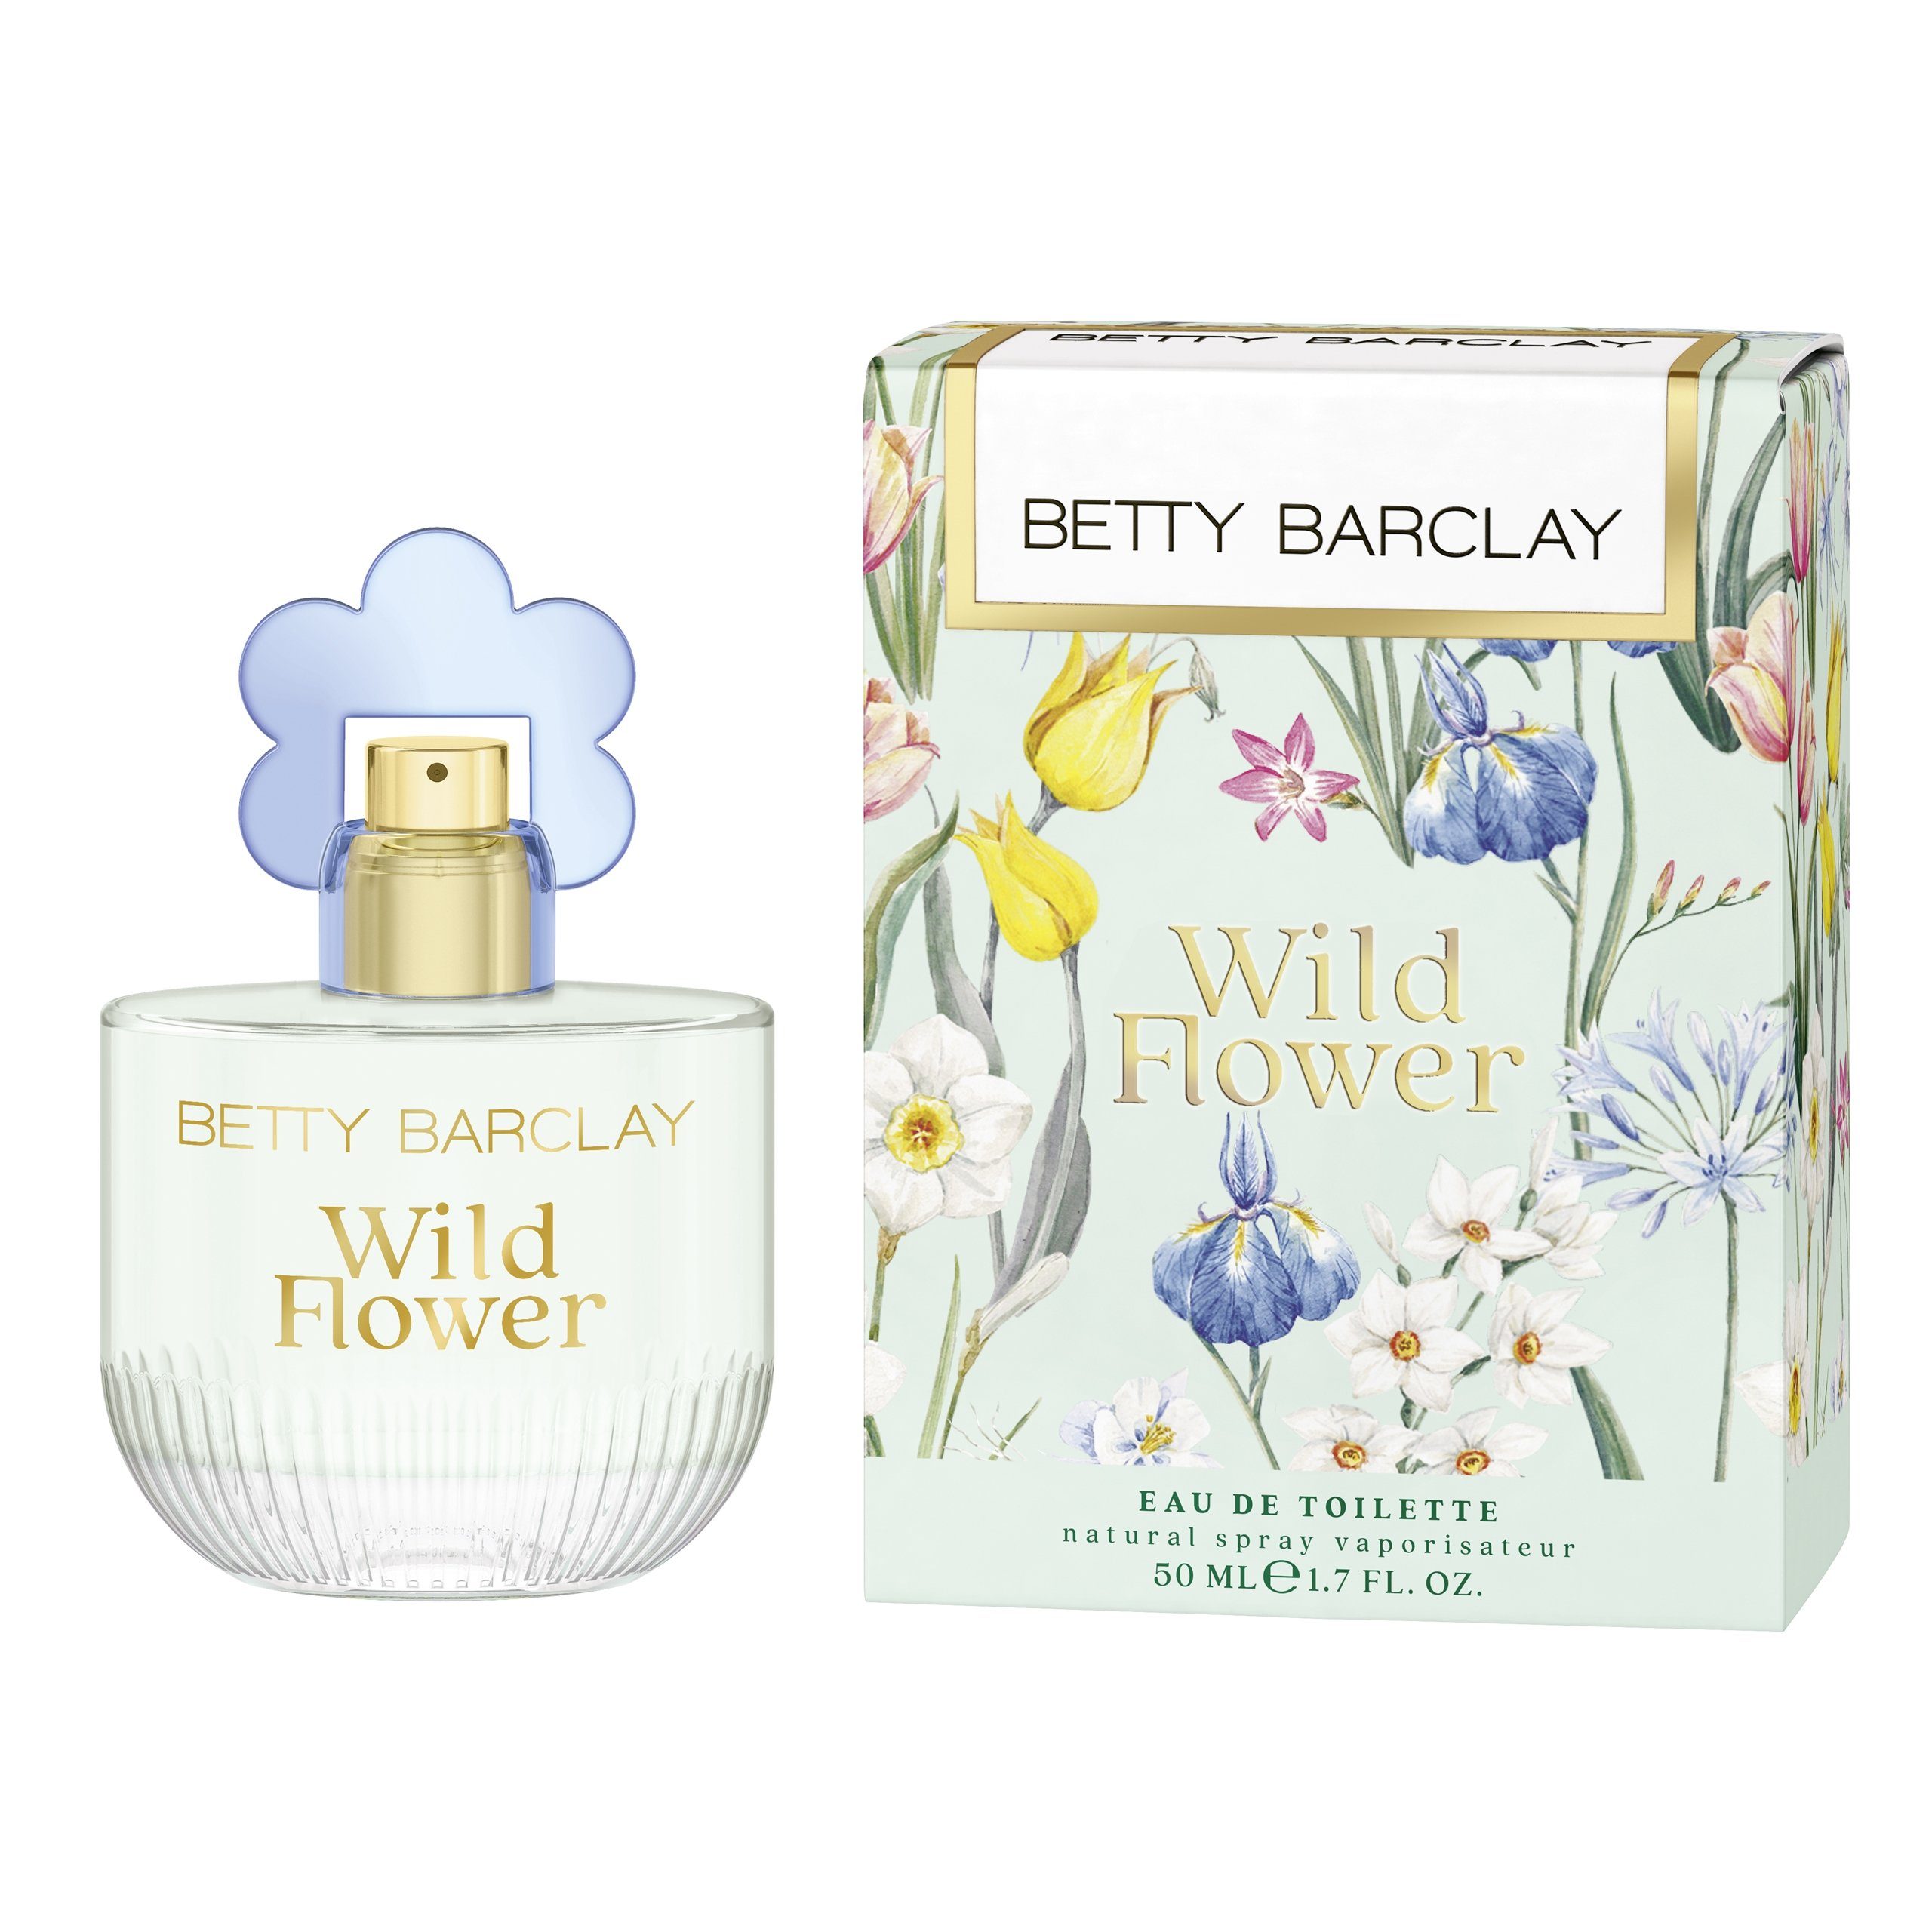 Betty Barclay Damen Parfums online kaufen | OTTO